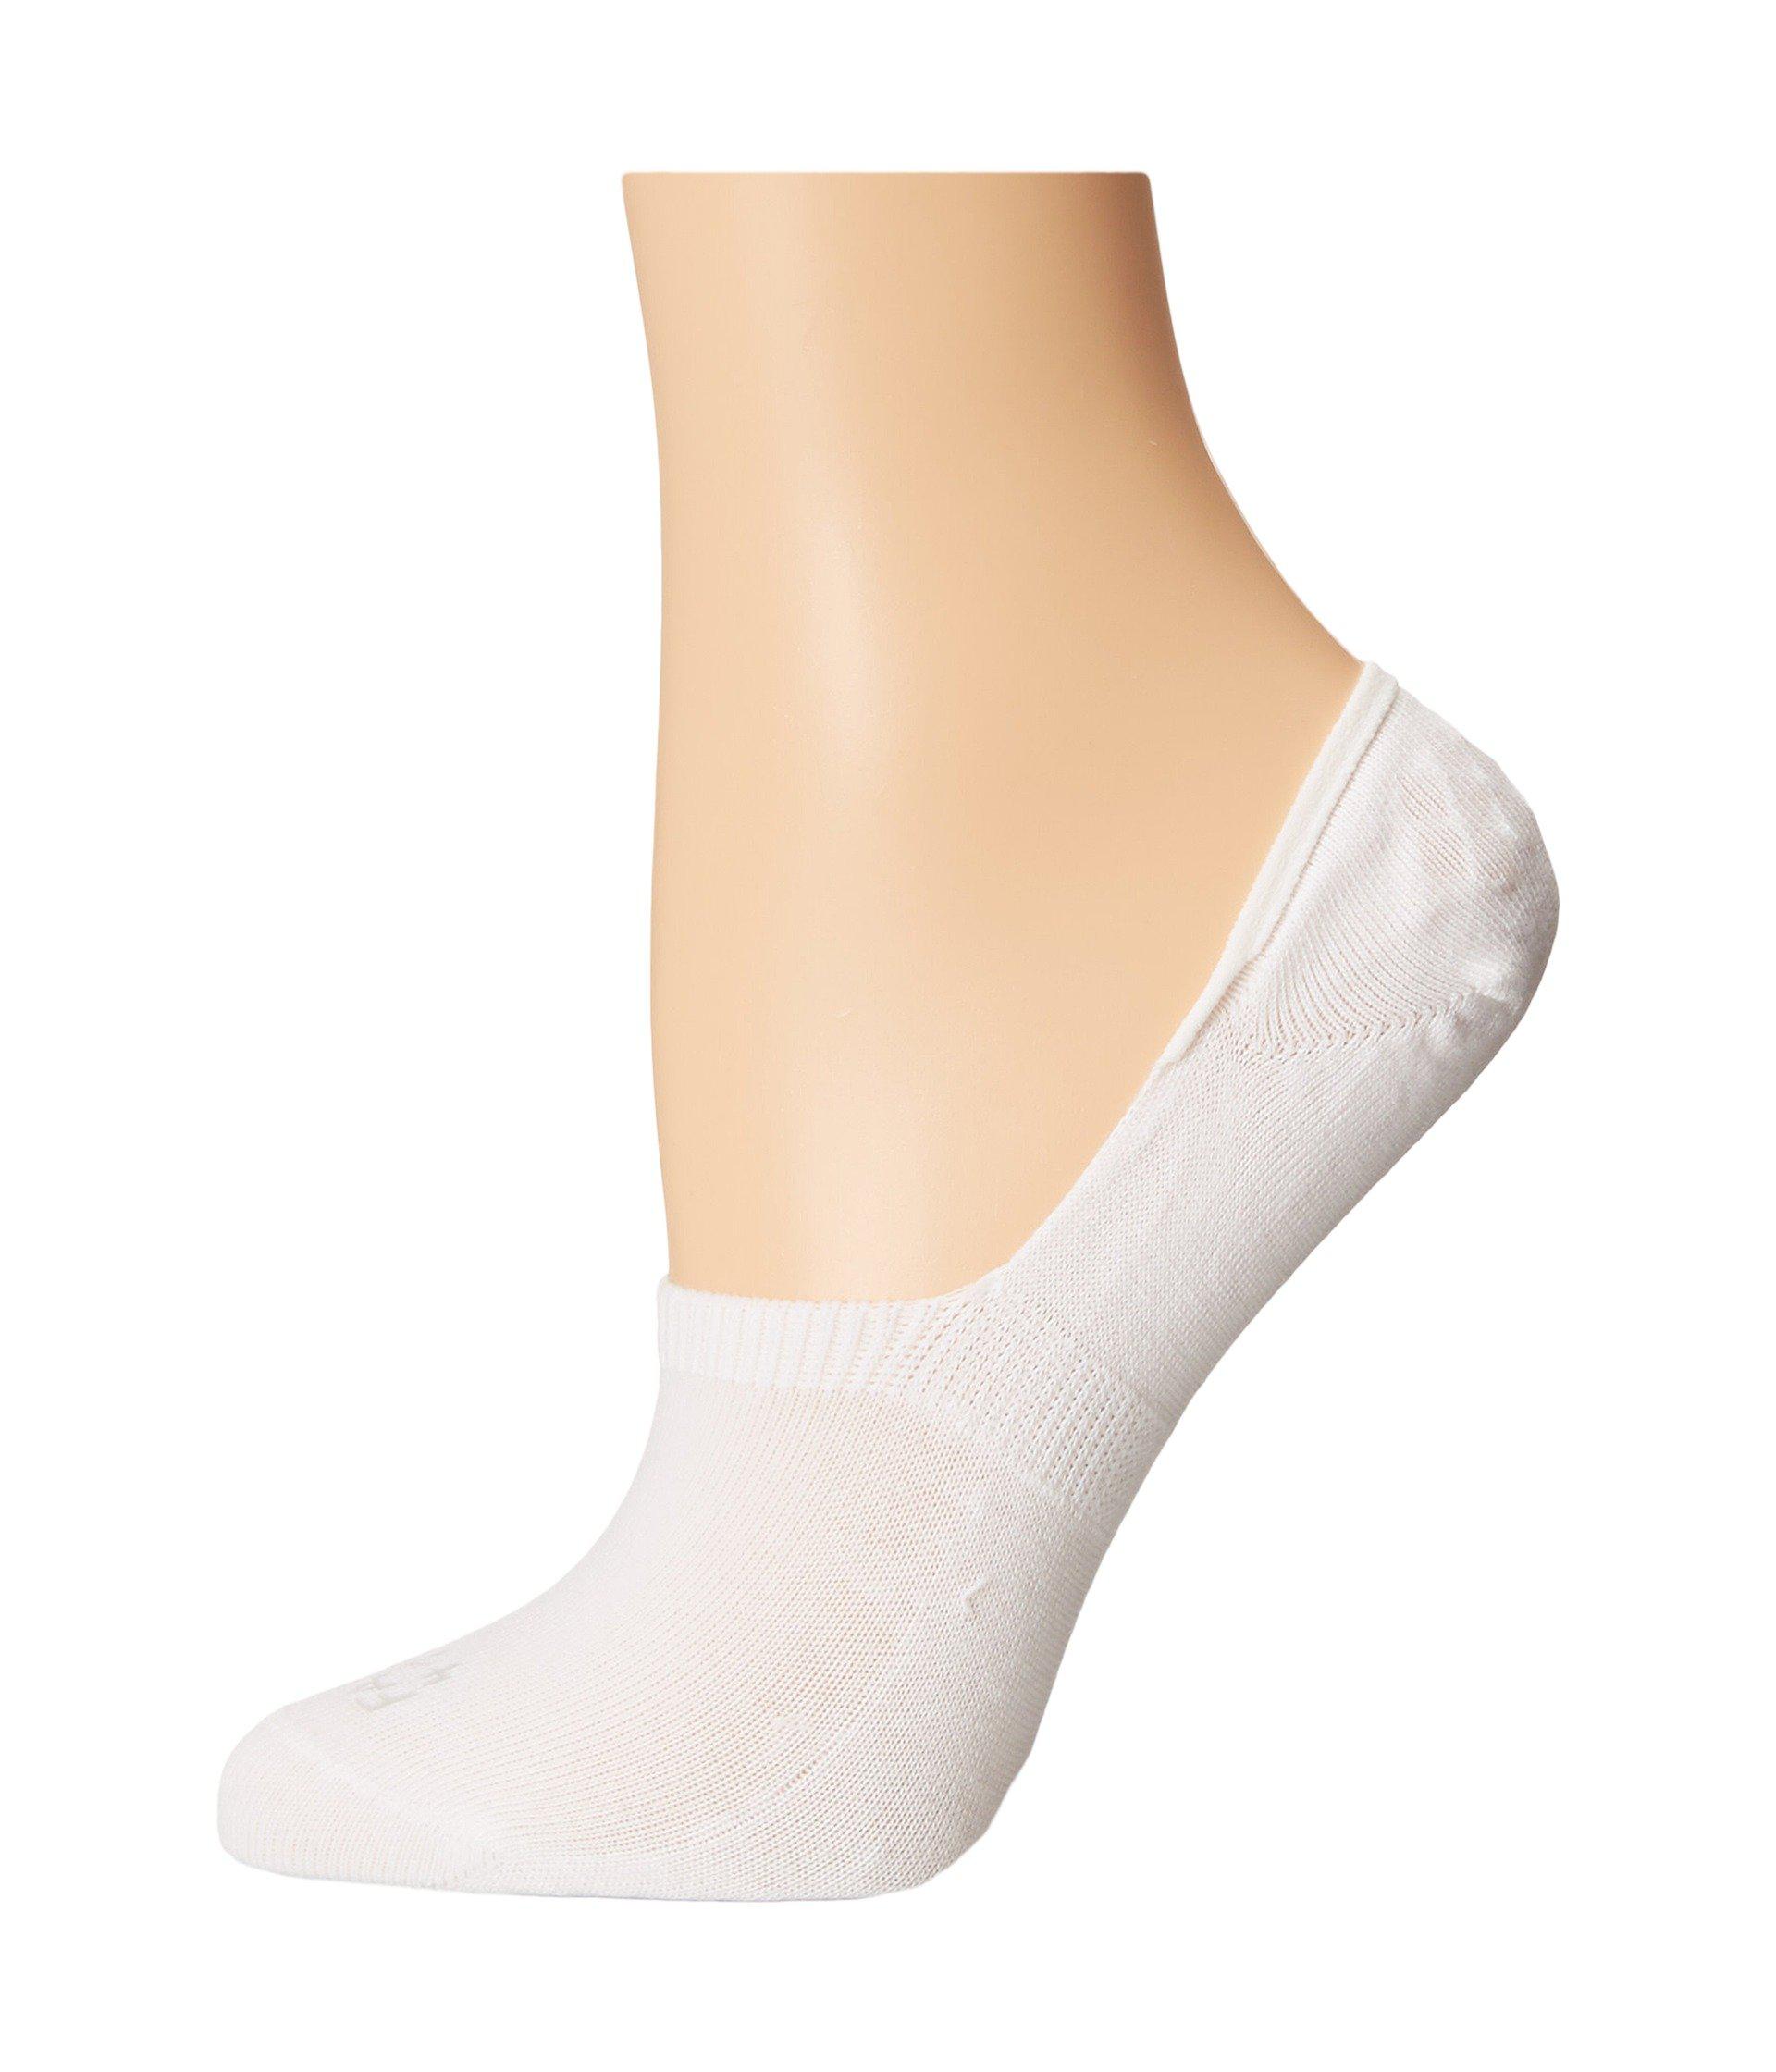 Lyst - Falke Sneaker Invisible Socks (white) Women's Low Cut Socks ...